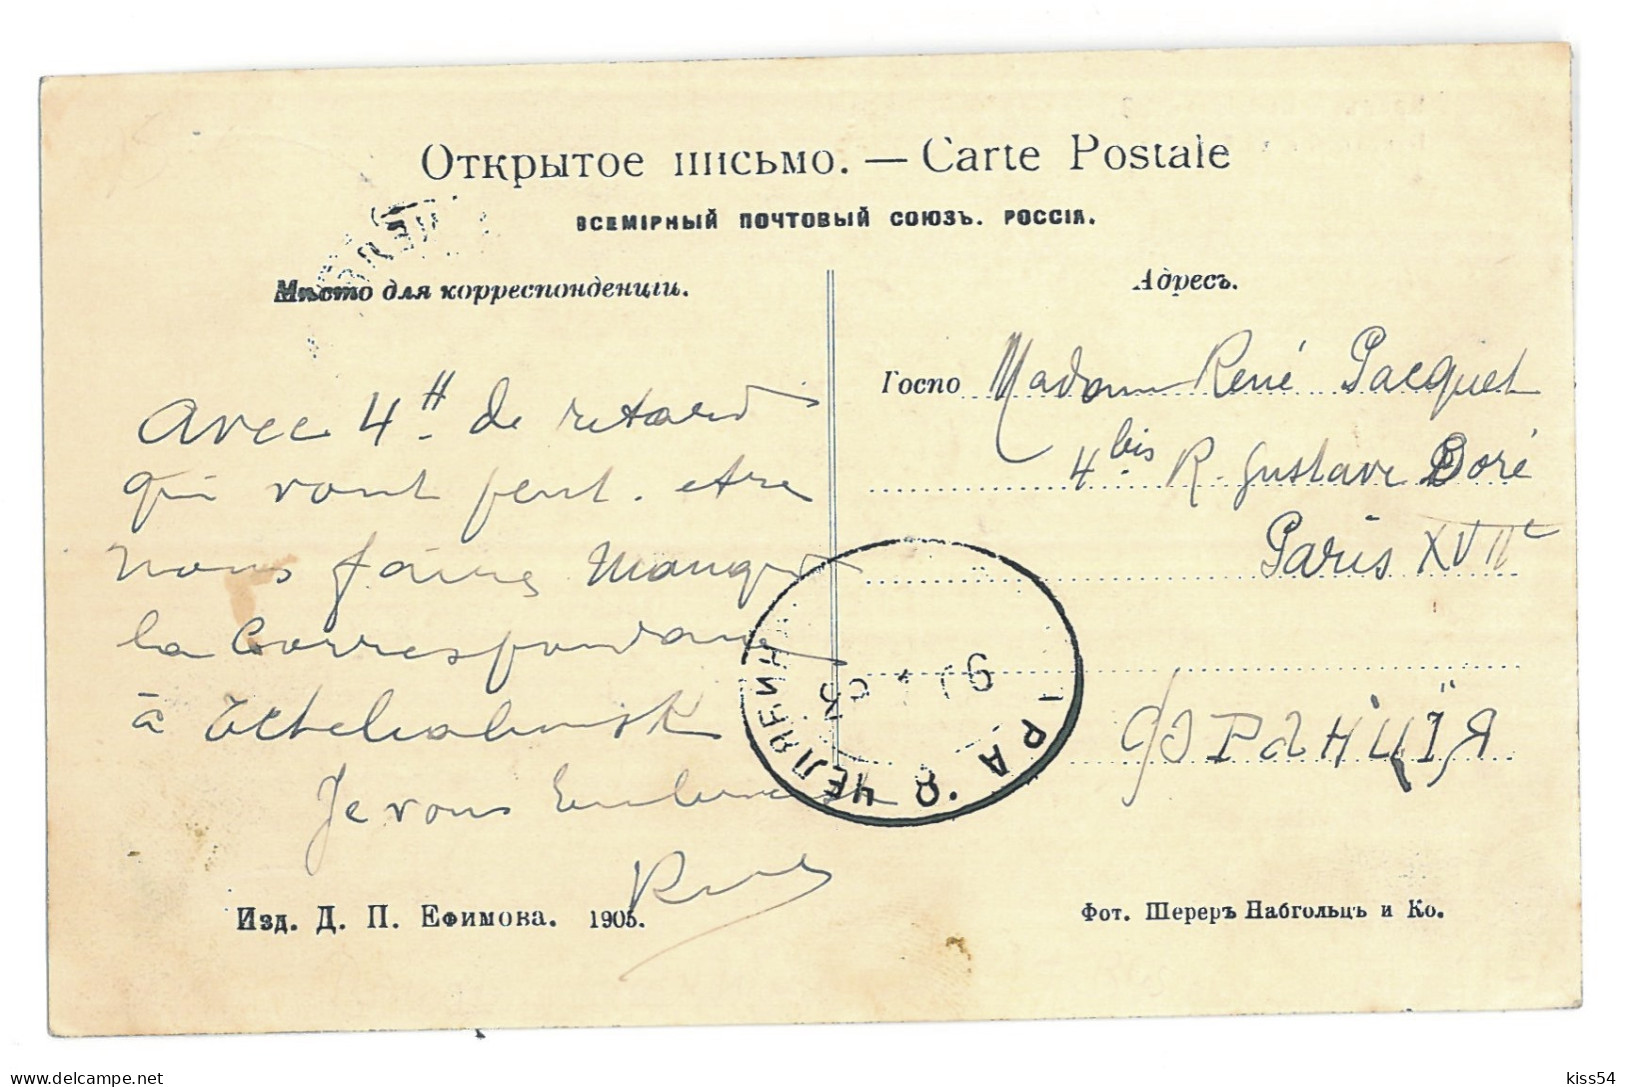 RUS 995 - 15466 BAIKAL, Iron Mines, Russia - Old Postcard - Used - 1906 - Russland